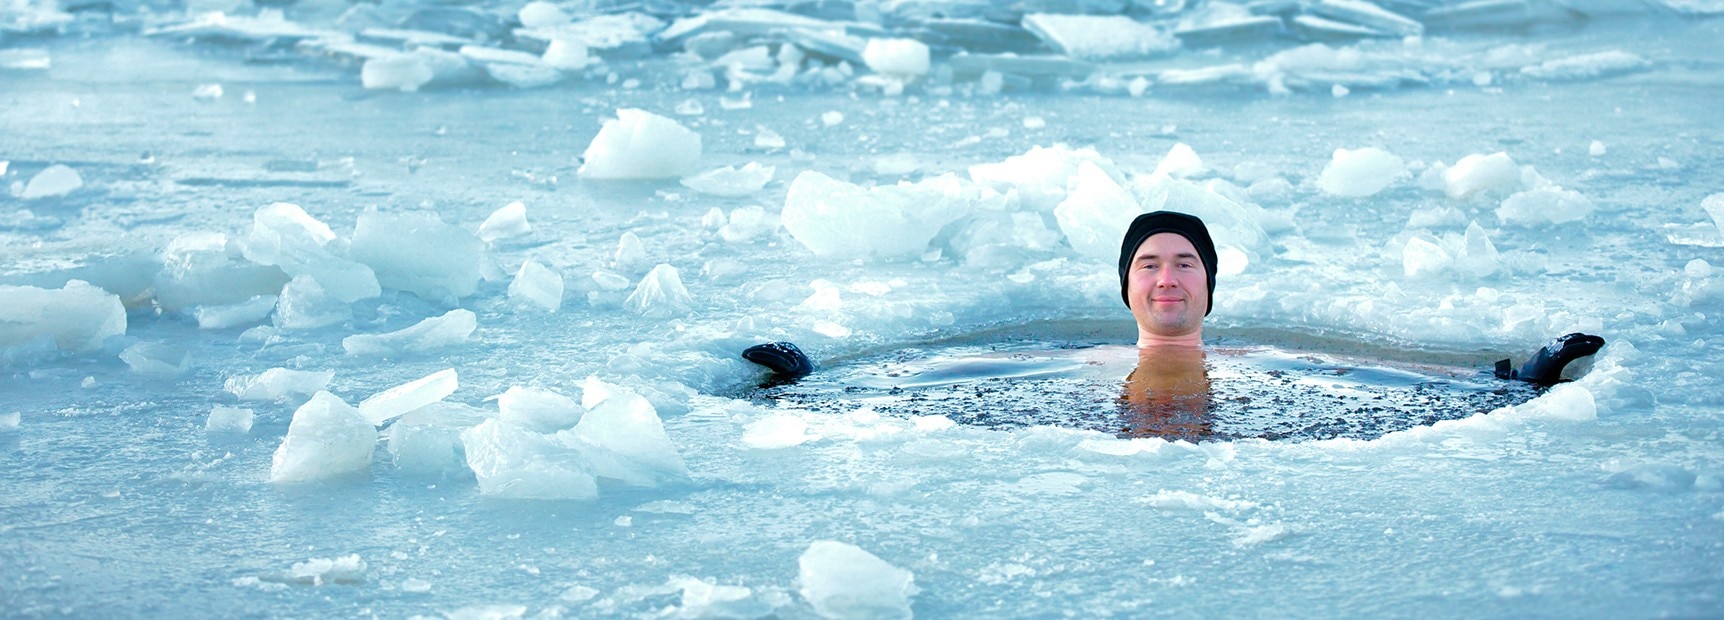 Купается лед. Человек по пояс в ледяной воде. Искупался в воде ледяной песня. Swimming in Cold Water. Лед купание фото.